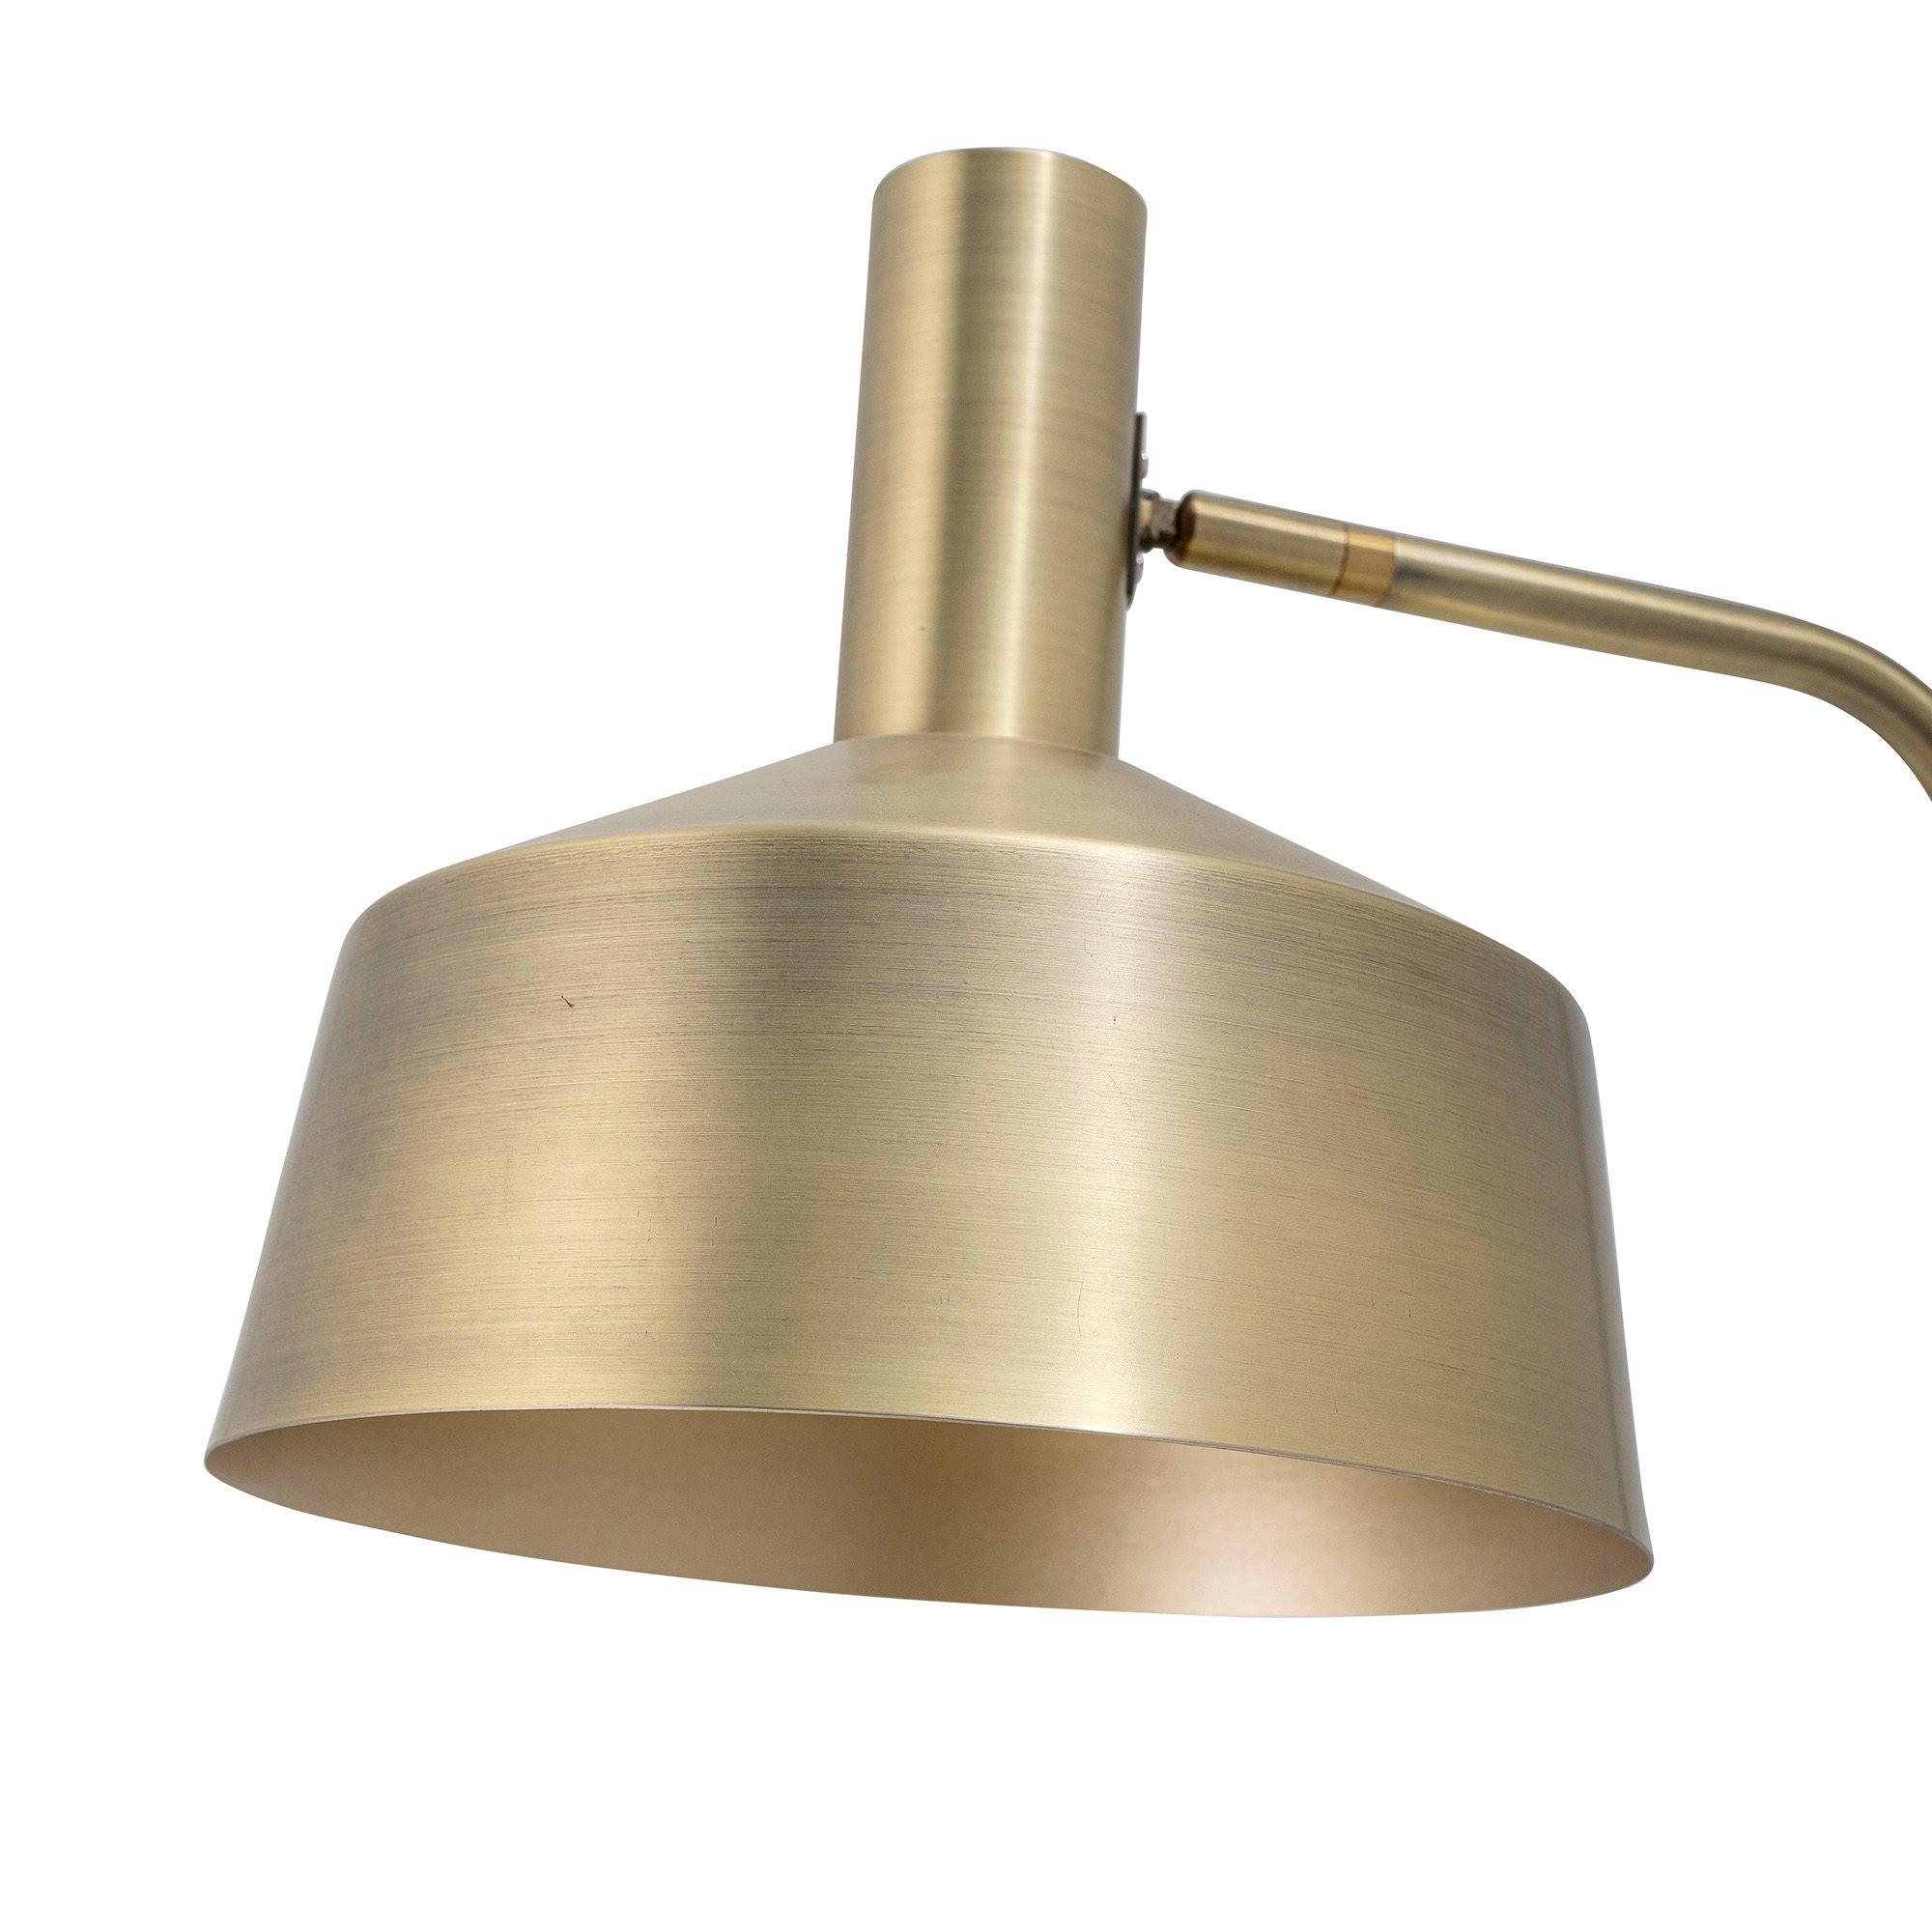 Bloomingville Lissa Lamp, ottone, metallo